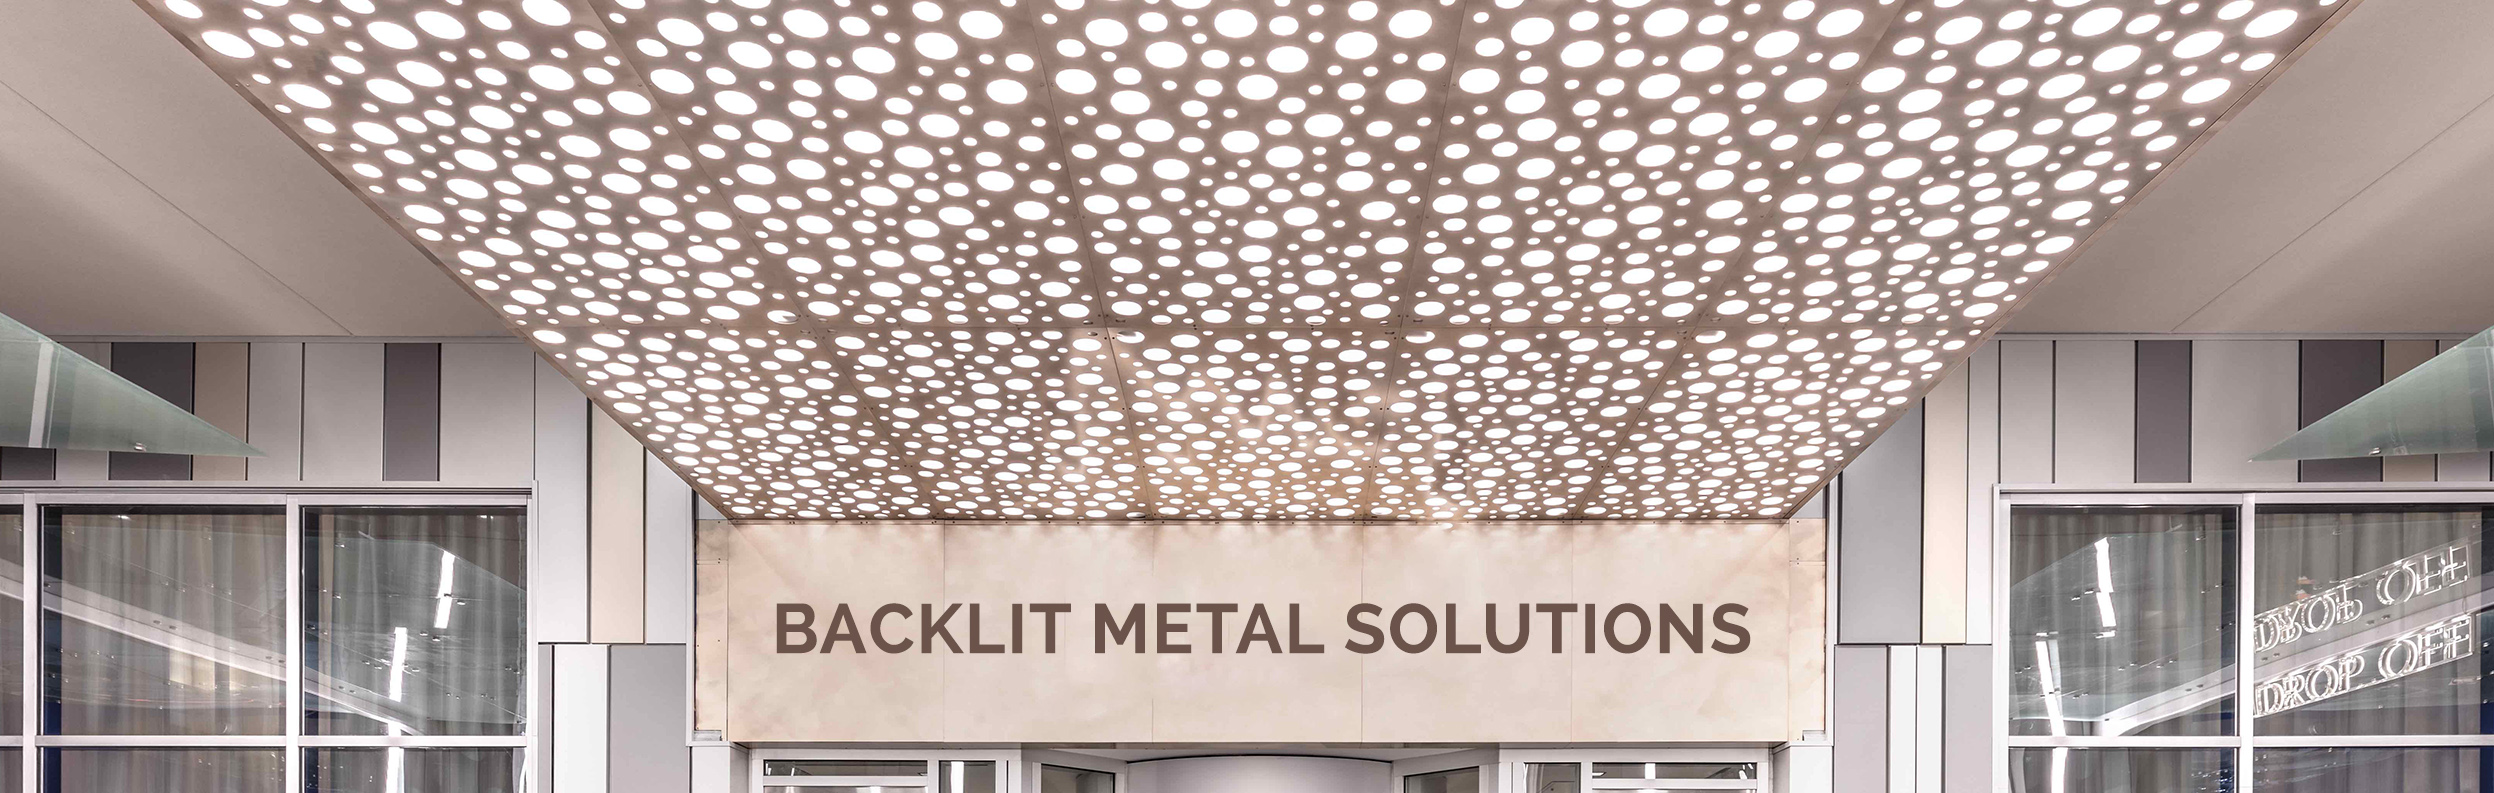 Backlit Metal Solutions - Moz Designs